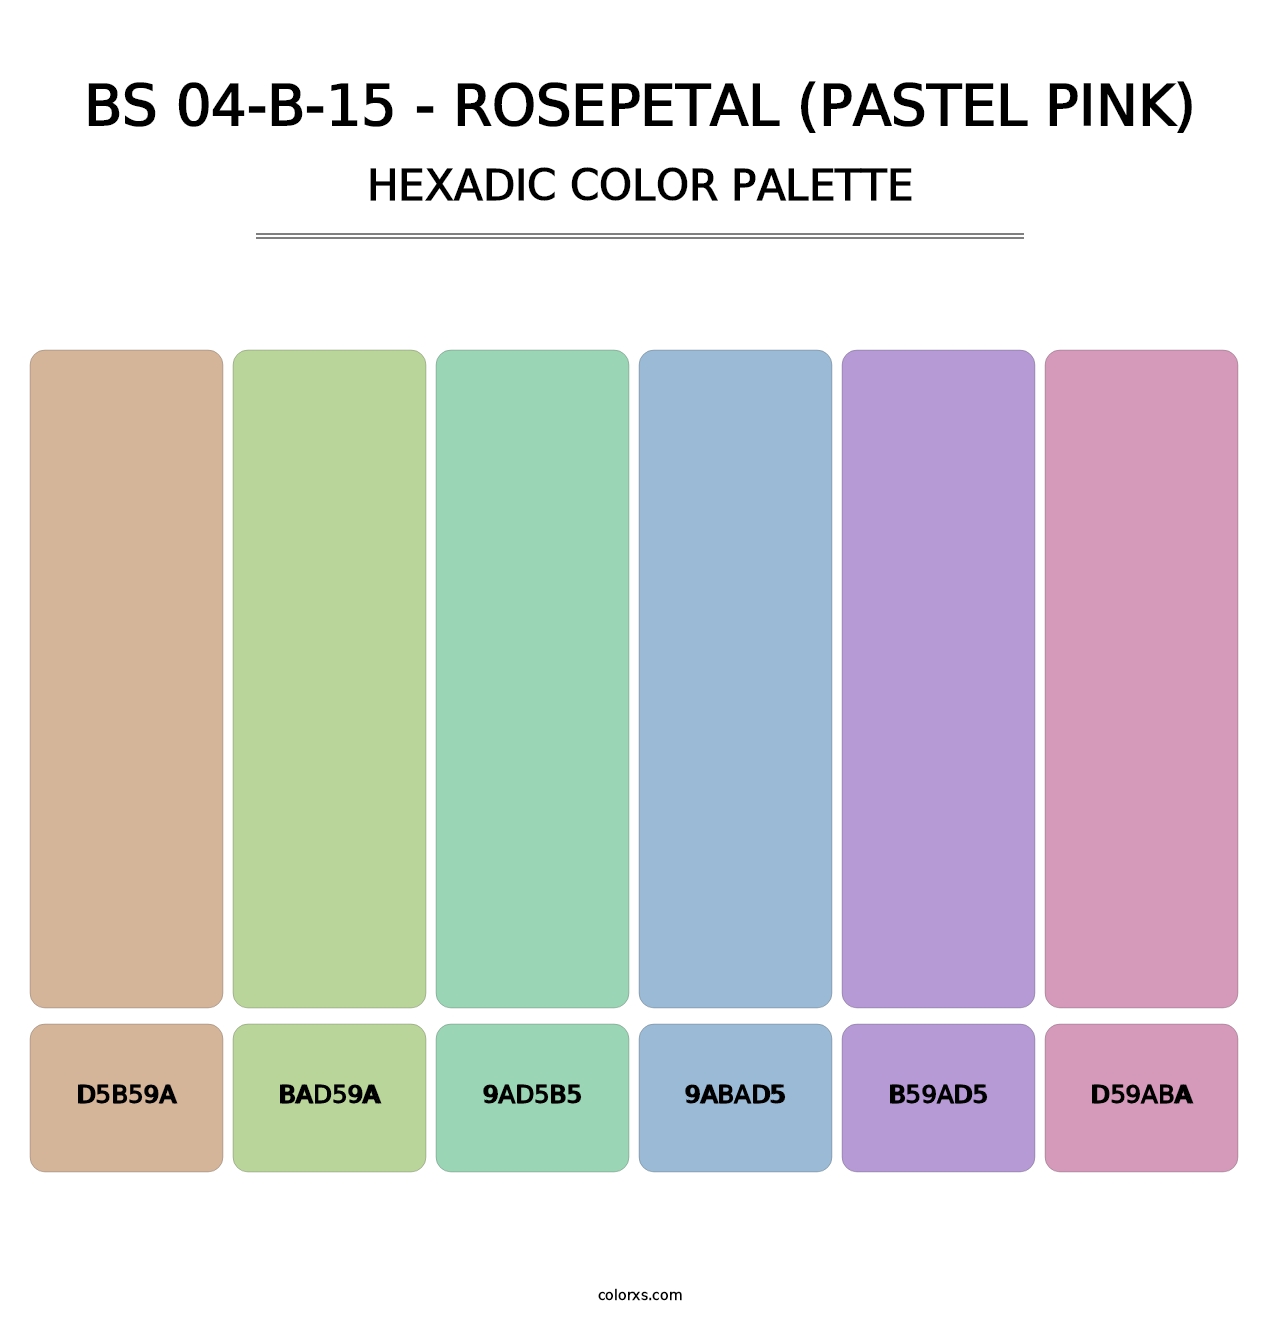 BS 04-B-15 - Rosepetal (Pastel Pink) - Hexadic Color Palette